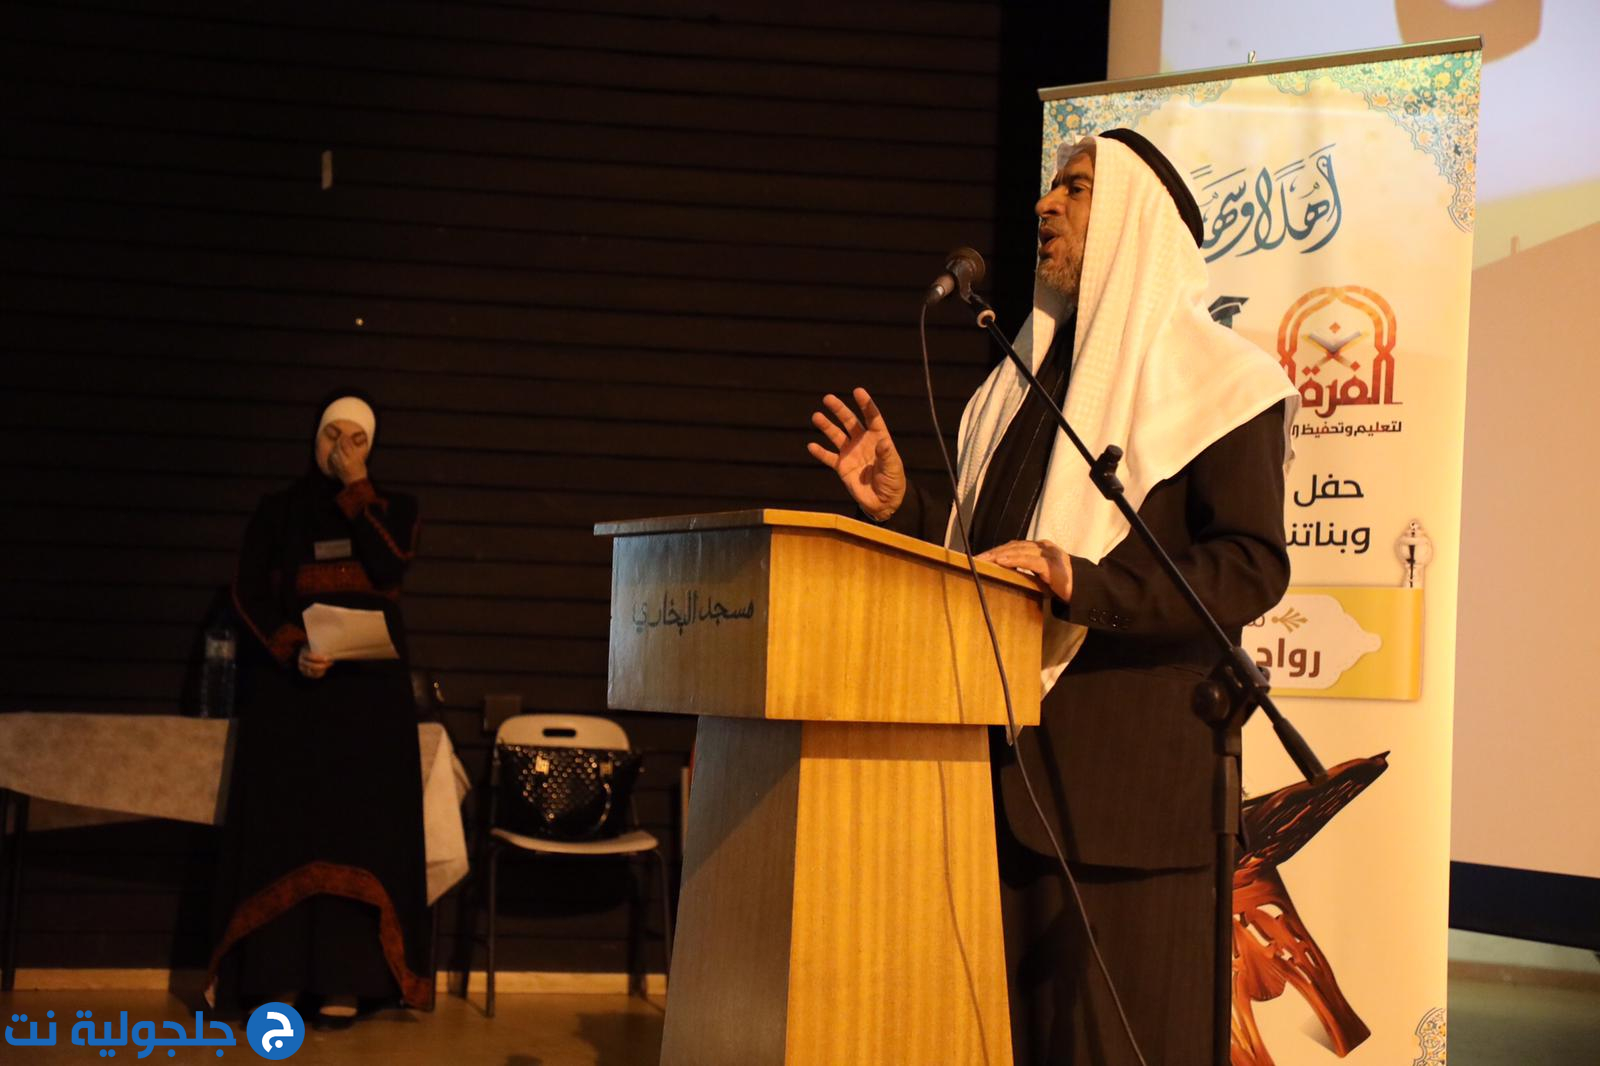 مؤسسة الفرقان لتحفيظ القرآن تكرم المتسابقين في مسابقة رواد الفرقان القطرية 